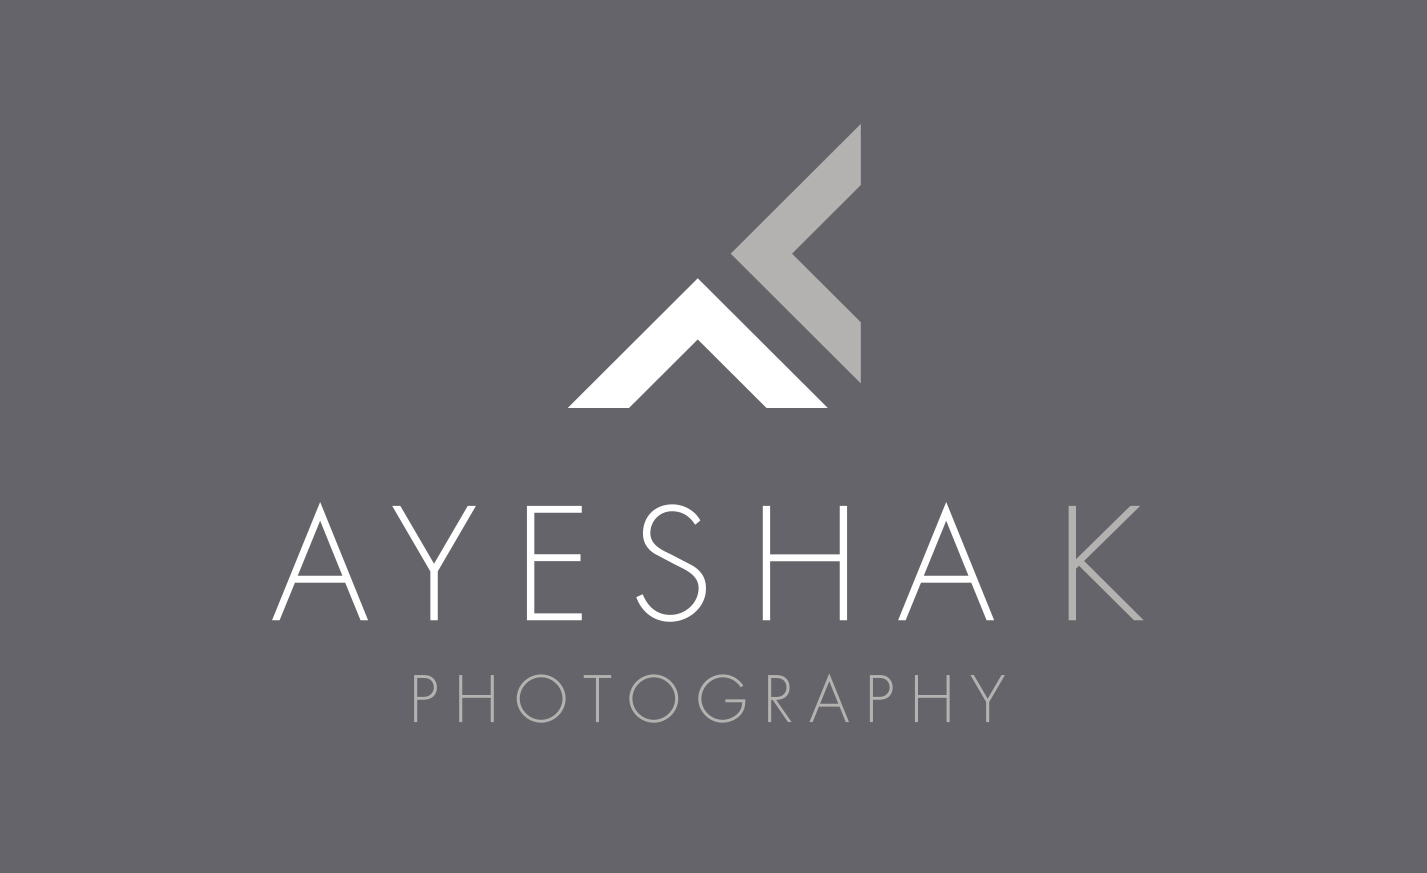 Ayesha K Photography